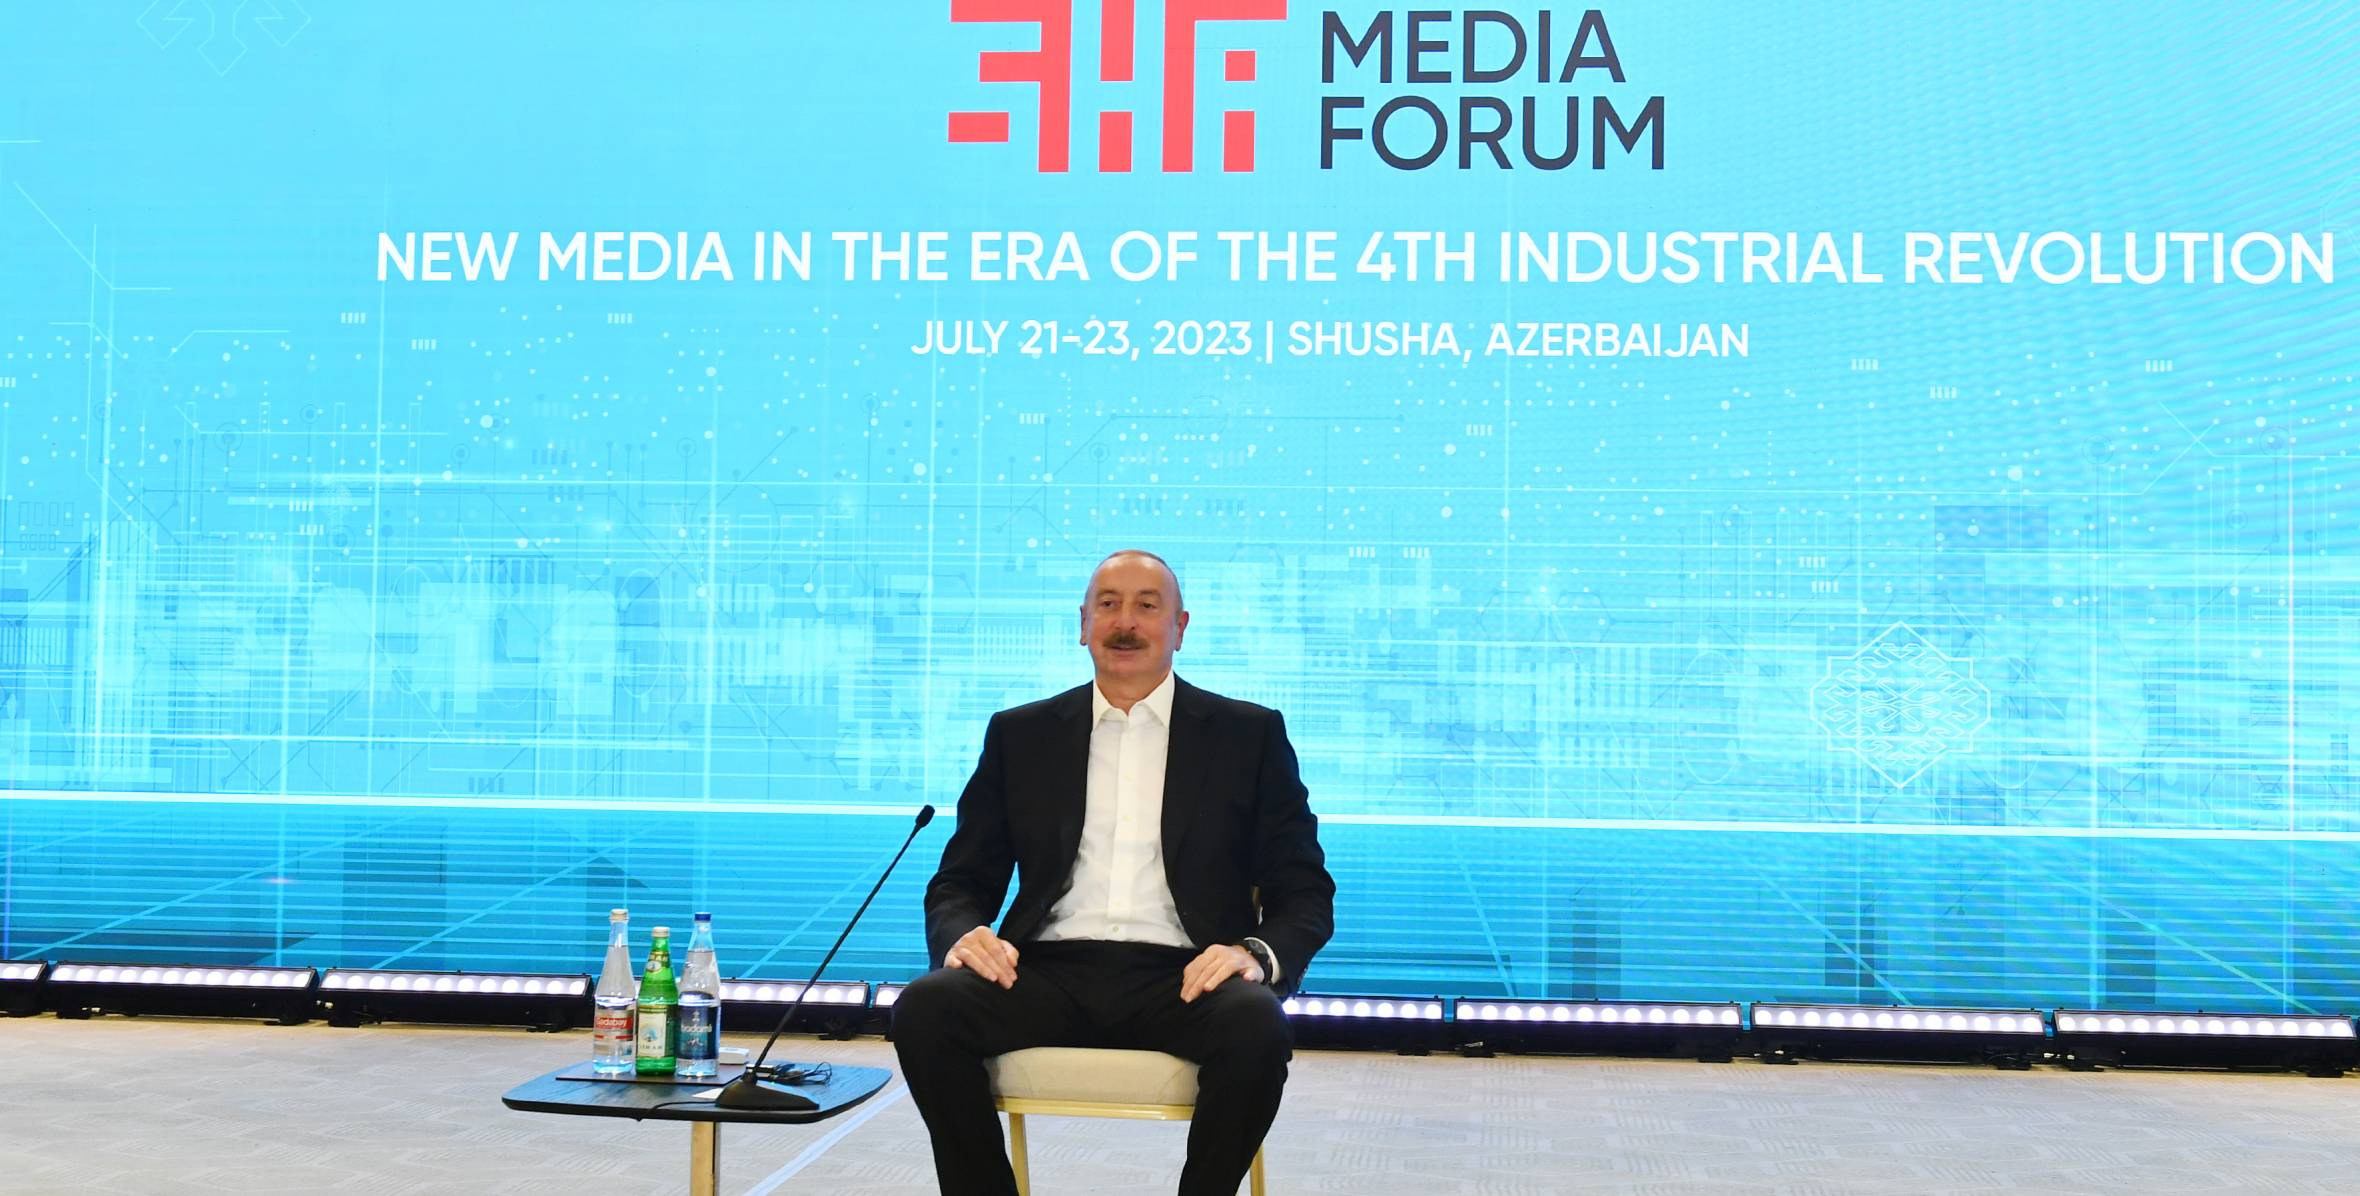 Ильхам Алиев выступил на Шушинском Глобальном медиафоруме